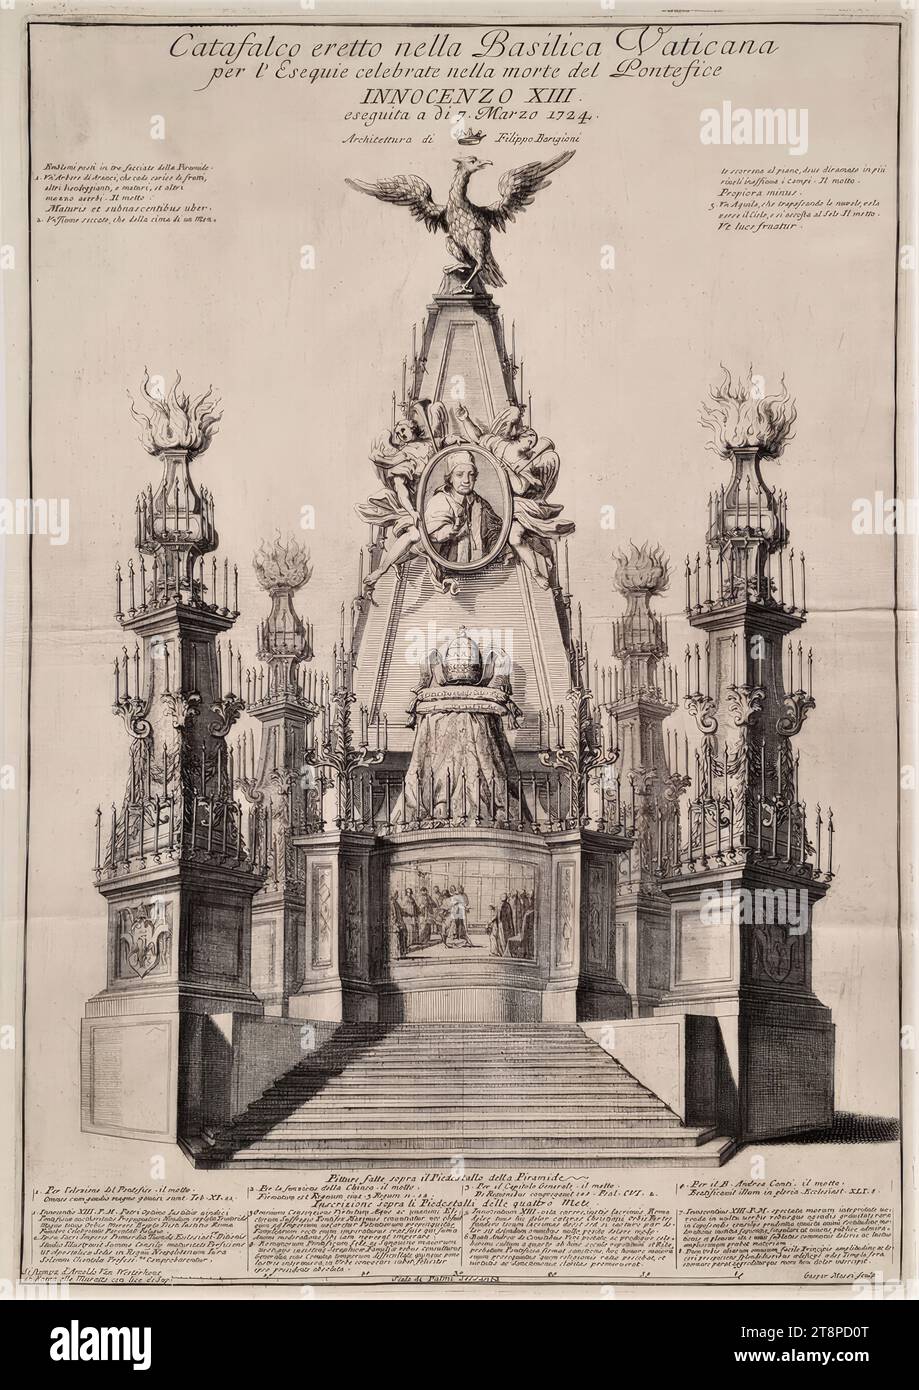 Structure funéraire pour le pape Innocent XIII Le 7 mars 1724 à St. Basilique Pierre de Rome, (1724), gravure sur papier, feuille : 51 × 36 cm Banque D'Images